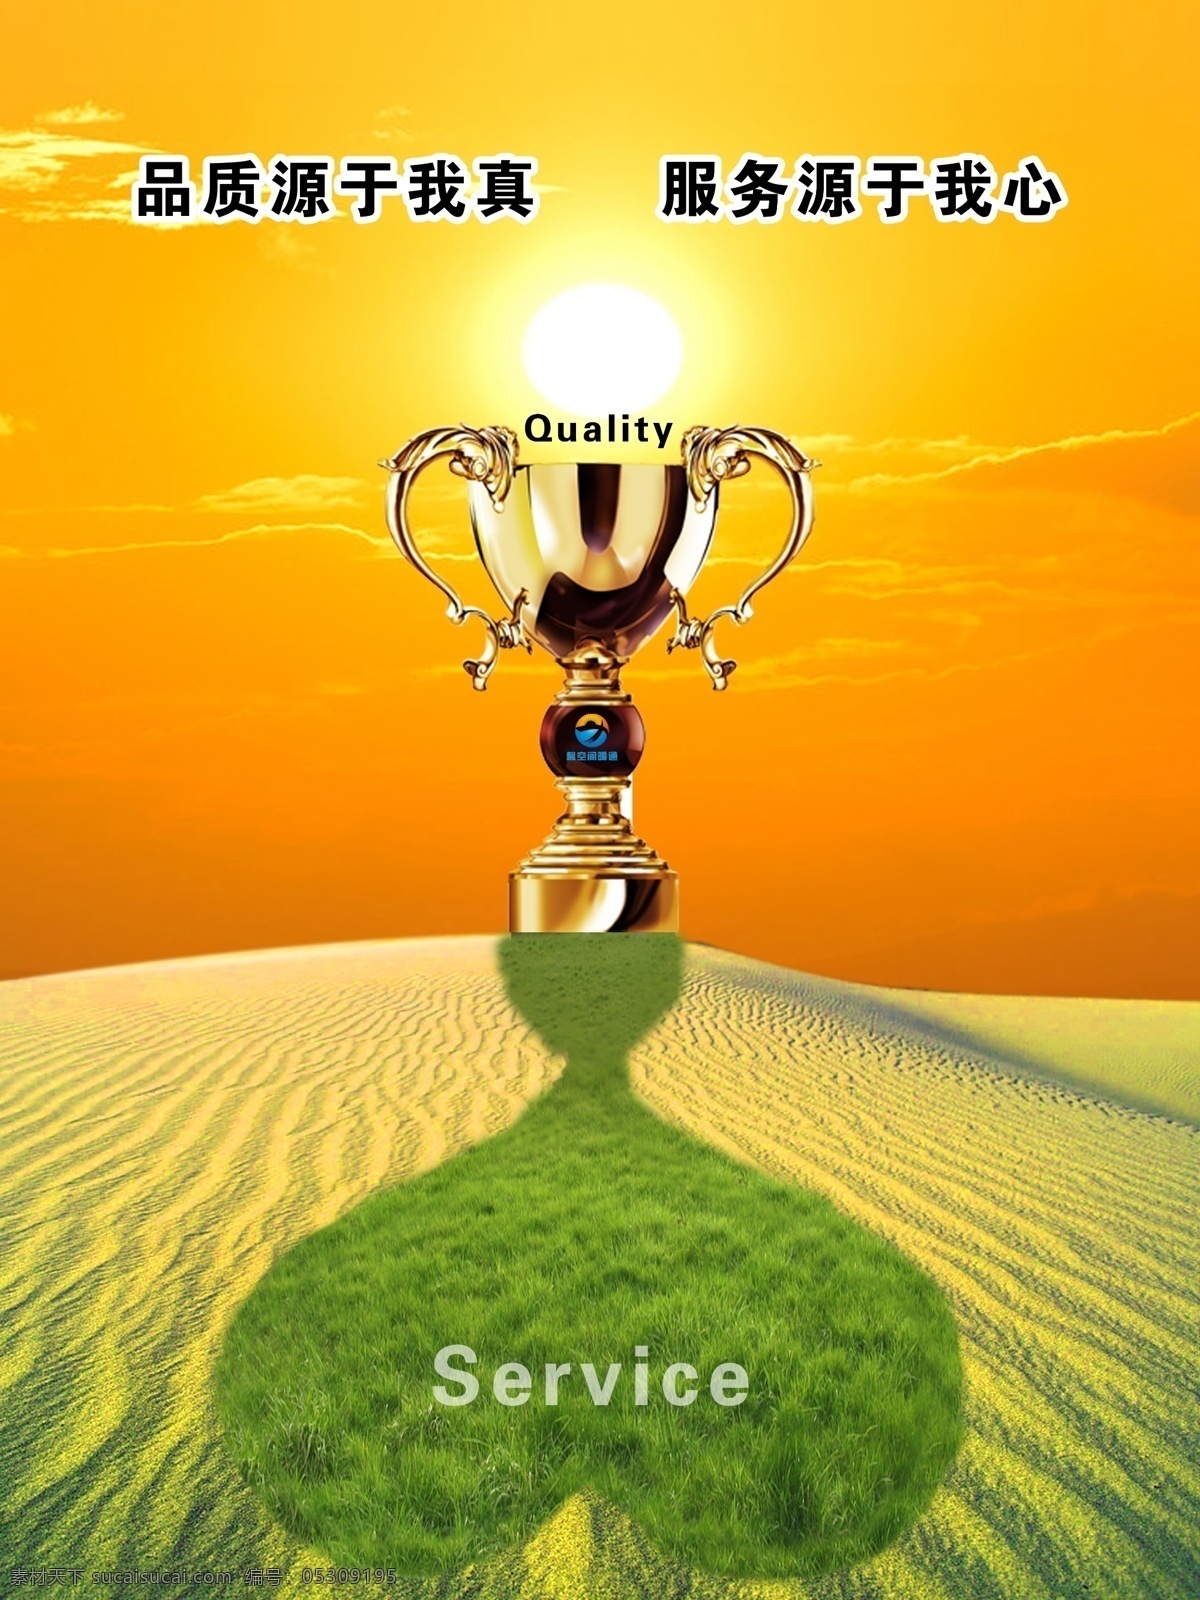 品质 服务 金杯 奖杯 沙漠 太阳 心 绿草 荣誉 宗旨 企业精神 广告设计模板 源文件